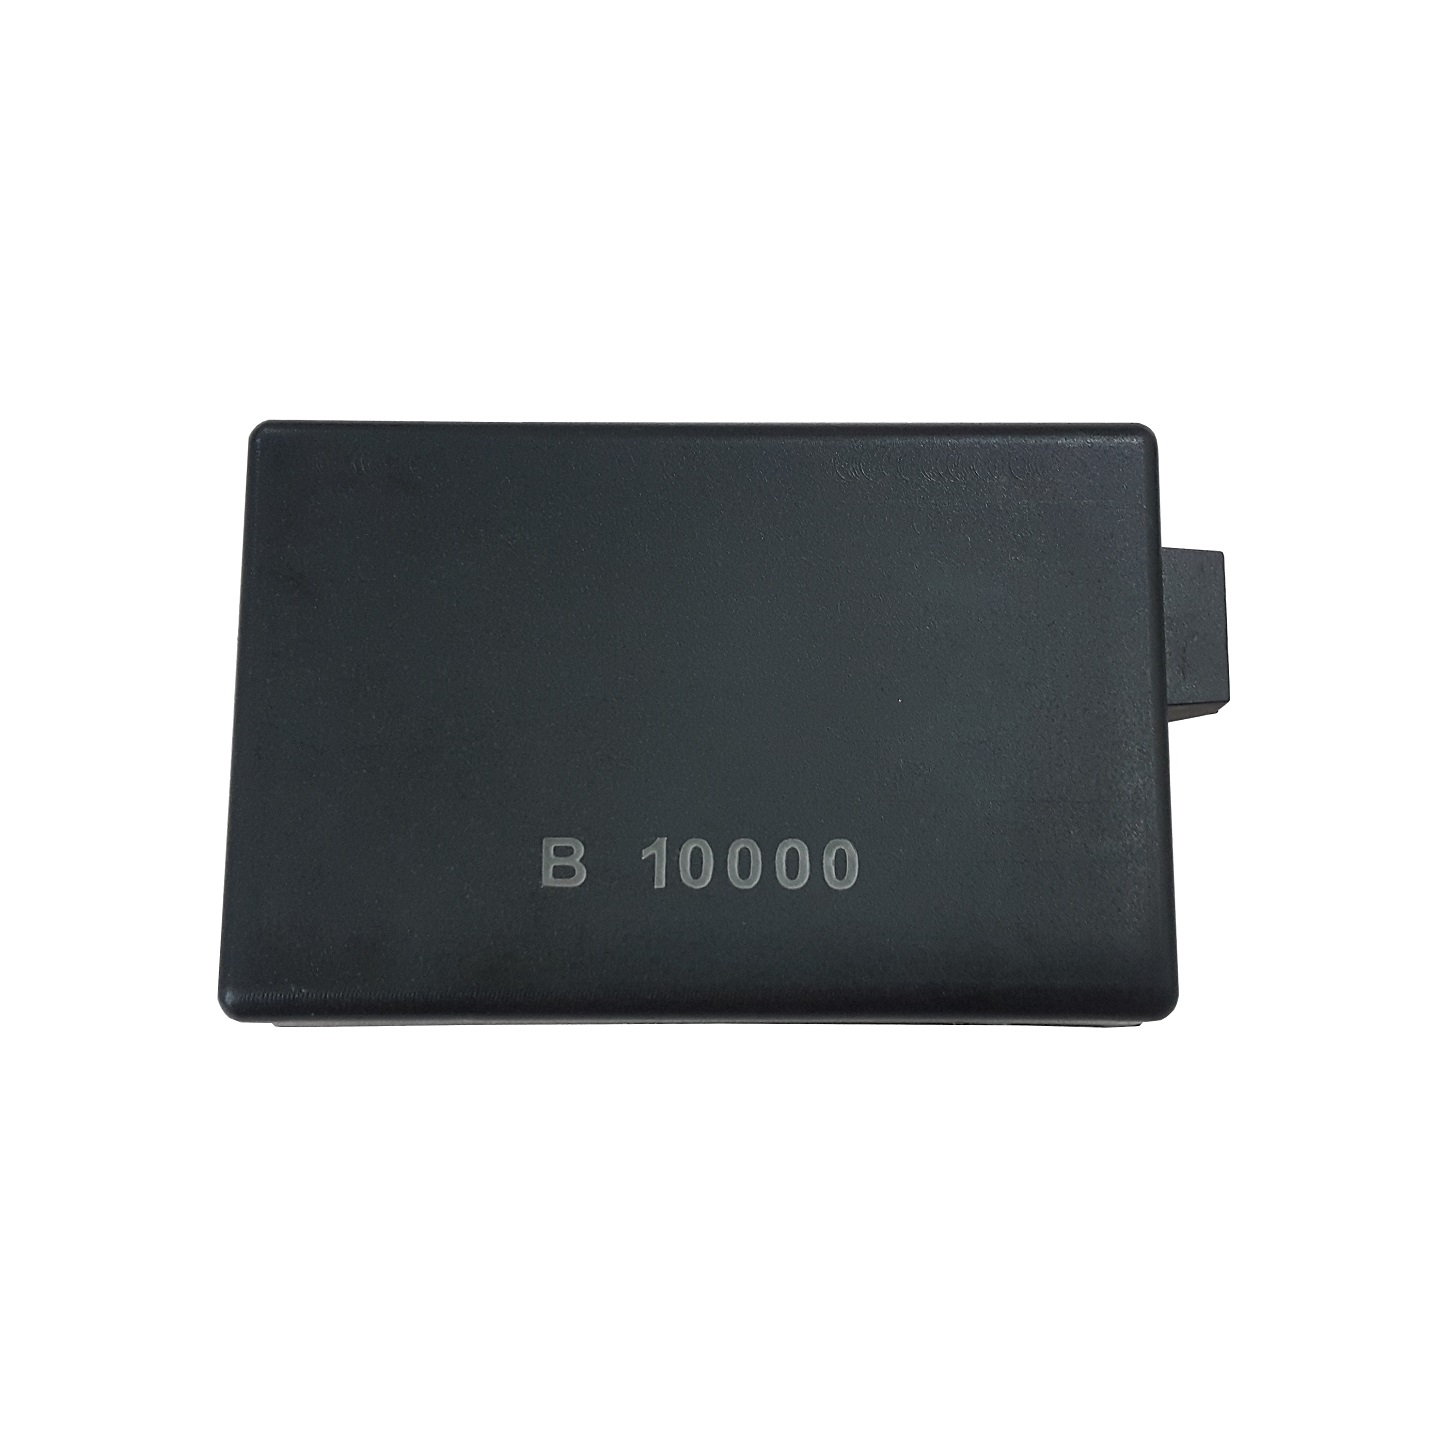 یو پی اس مدل B10000 با ظرفیت 16 ولت آمپر مناسب برای پوز فروشگاهی